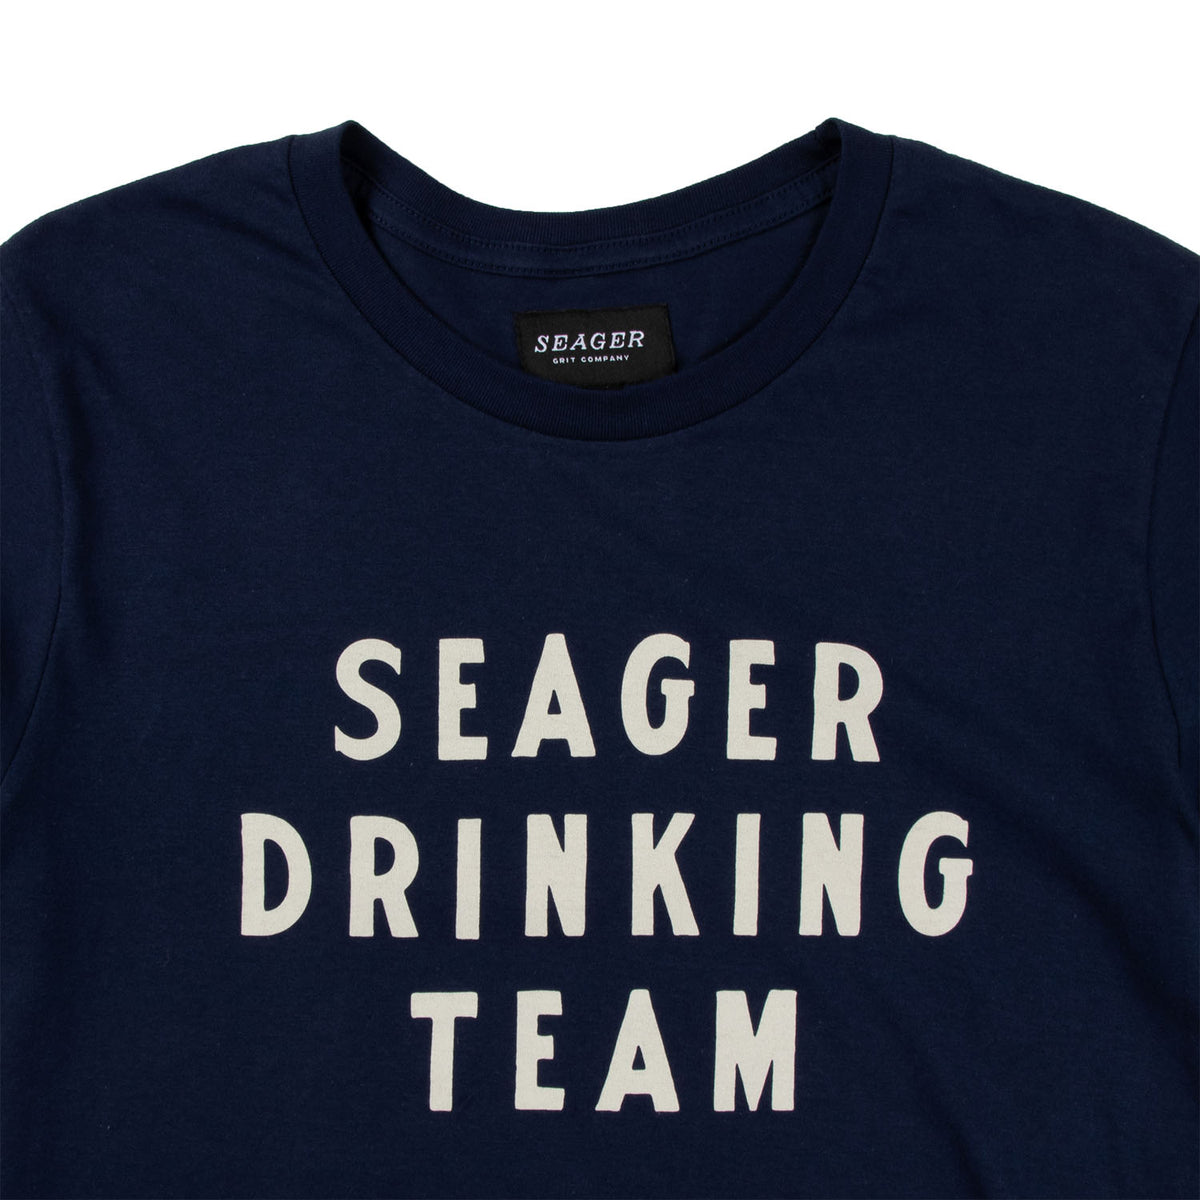 Terez Paylor All-Juice Team Shirt + Hoodie - Yahoo + BreakingT